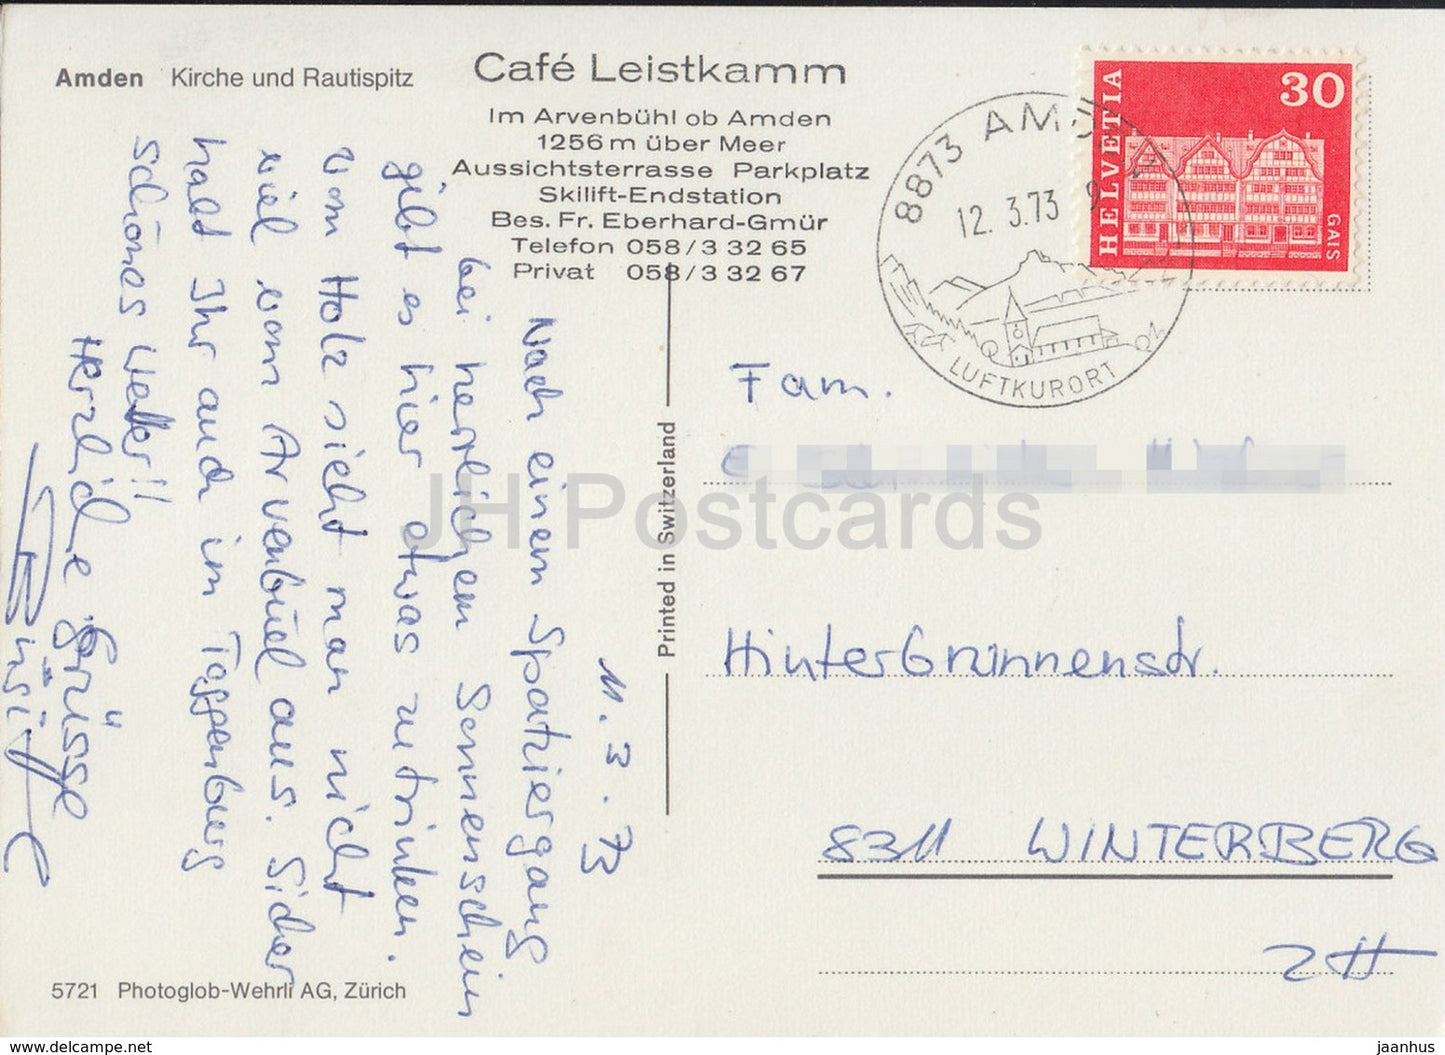 Amden - Kirche und Rautispitz - Cafe Leistkamm - Kirche - 5721 - 1973 - Schweiz - gebraucht